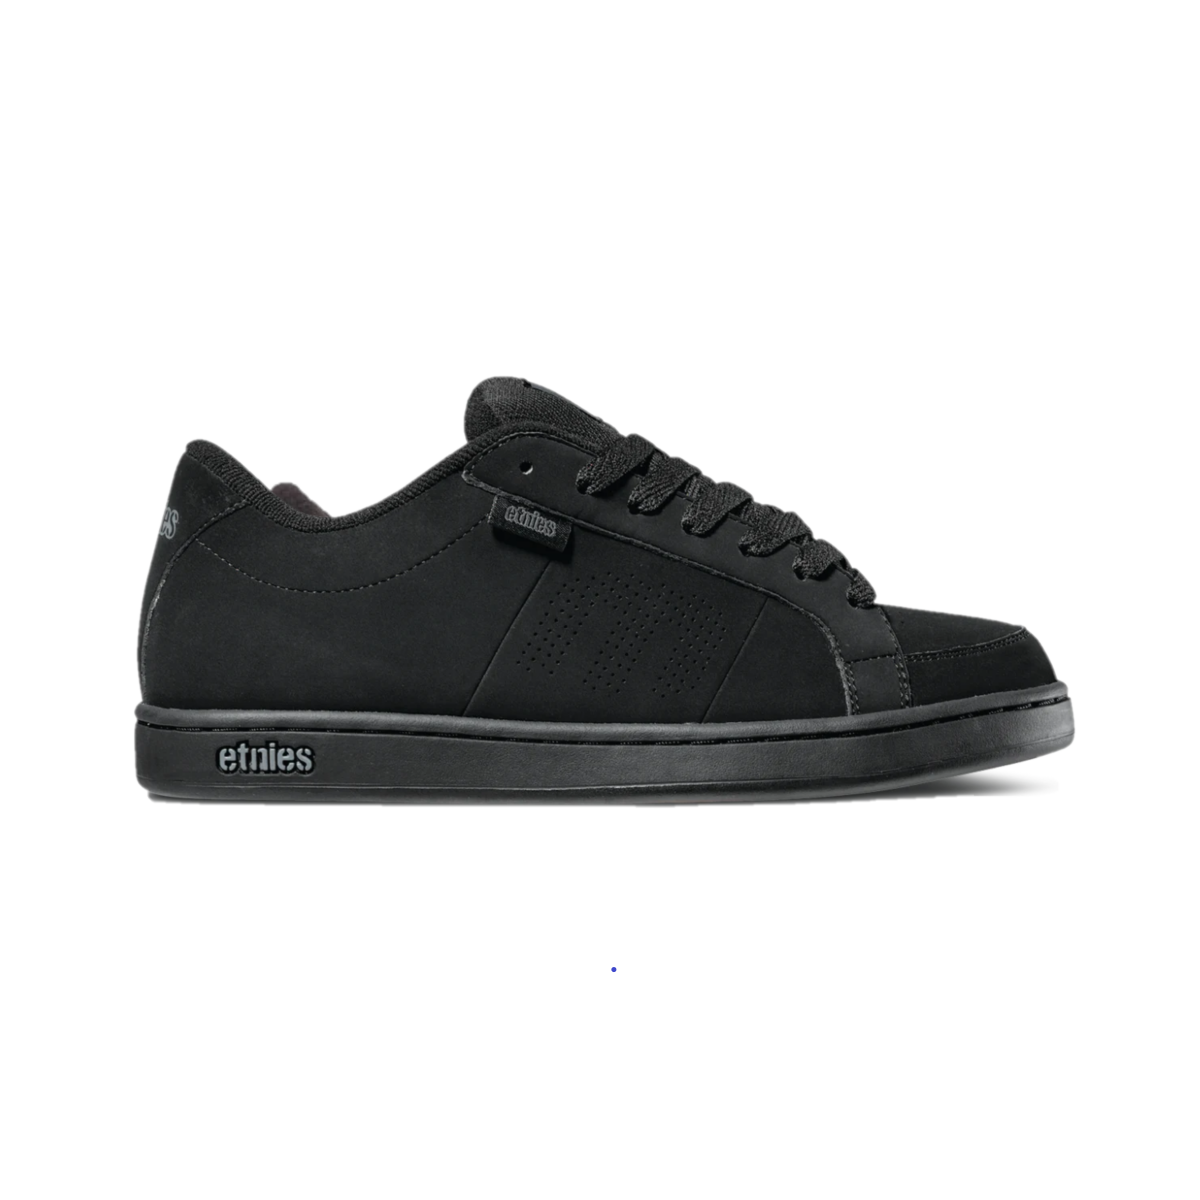 ETNIES 4101000091 003 KINGPIN MN'S (Medium) Black/Black Nubuck & Synthetic Skate Shoes